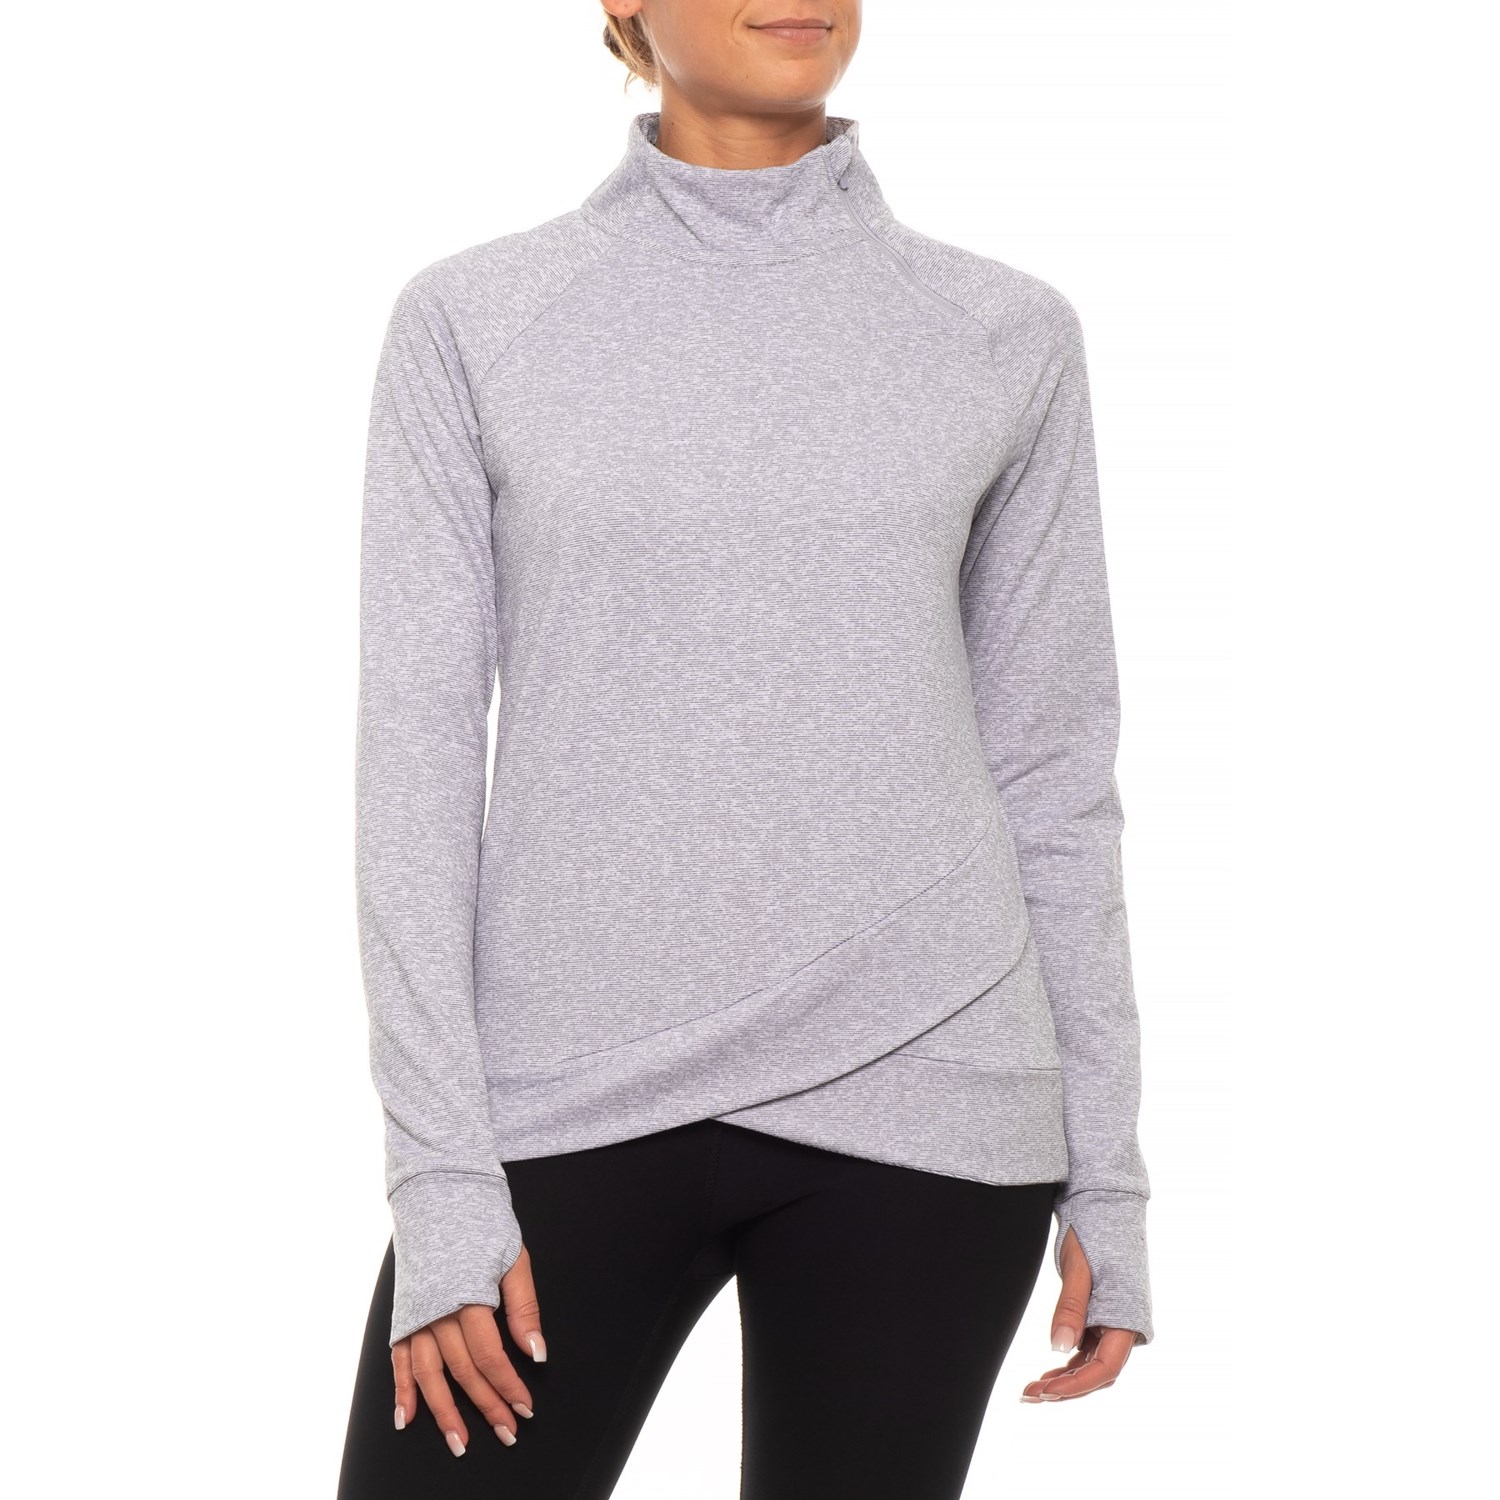 Mondetta View B Asymmetric Shirt – Zip Neck, Long Sleeve (For Women)